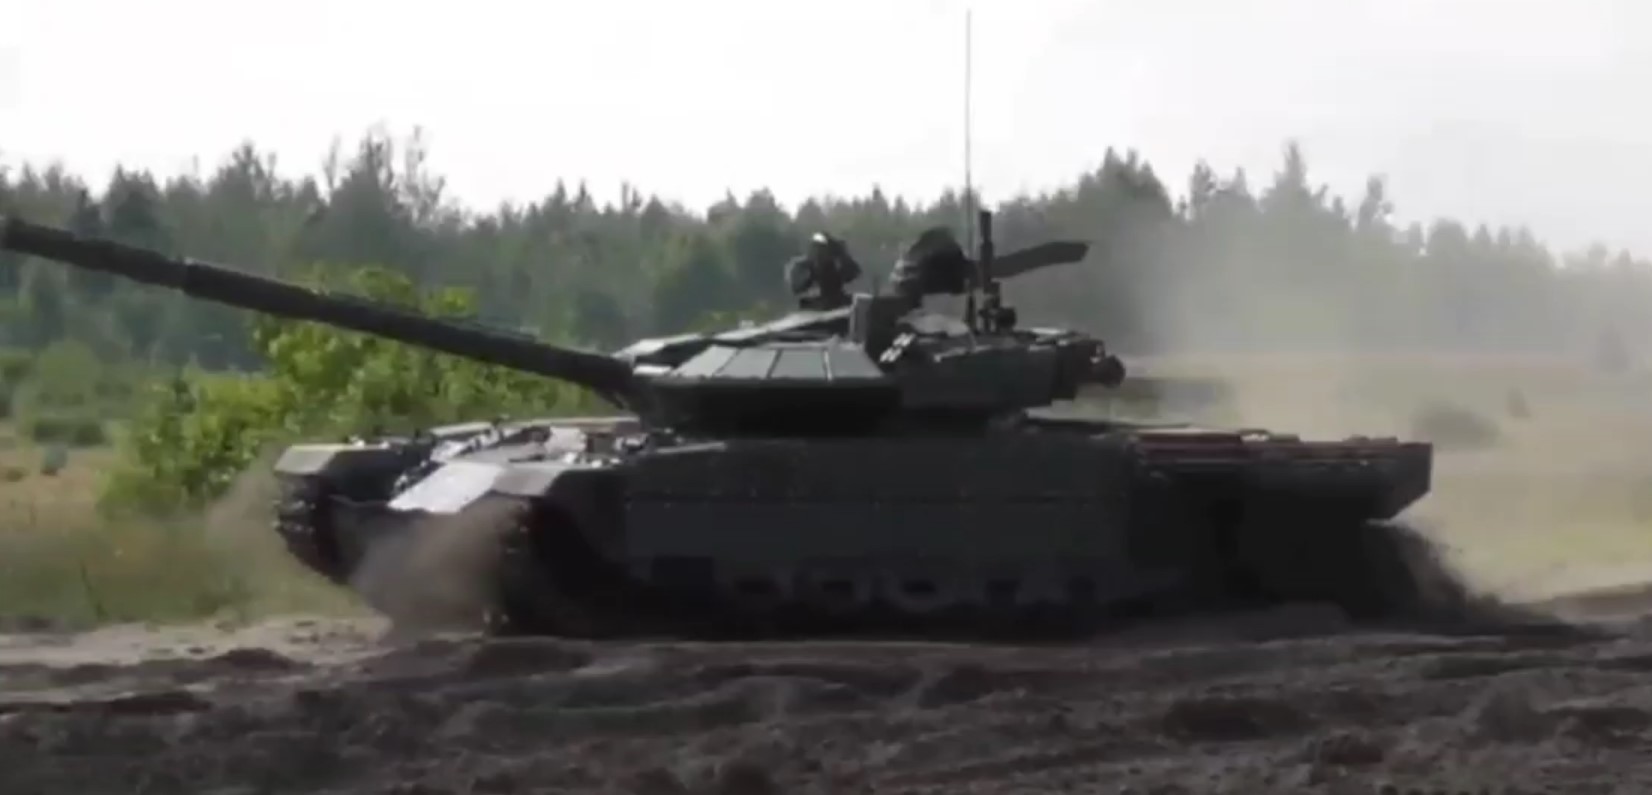 Дослідний зразок білоруської модернізації танка Т-72Б. Липень 2022. Білорусь. Кадр з відео “Госкомвоенпром”